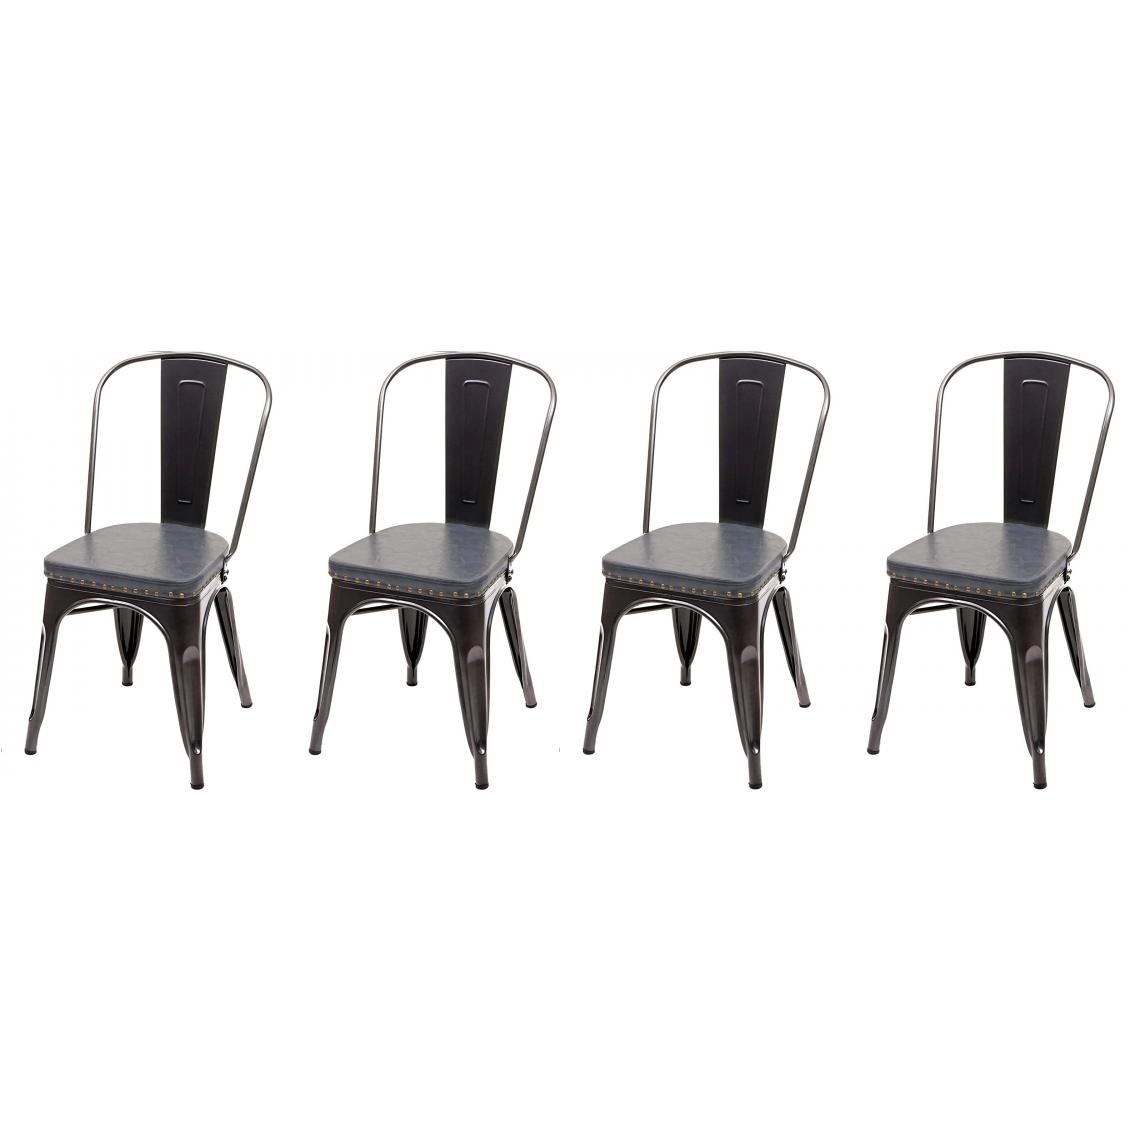 Decoshop26 - 4x chaises de salle à manger cuisine style industriel métal noir et similicuir gris CDS04556 - Chaises